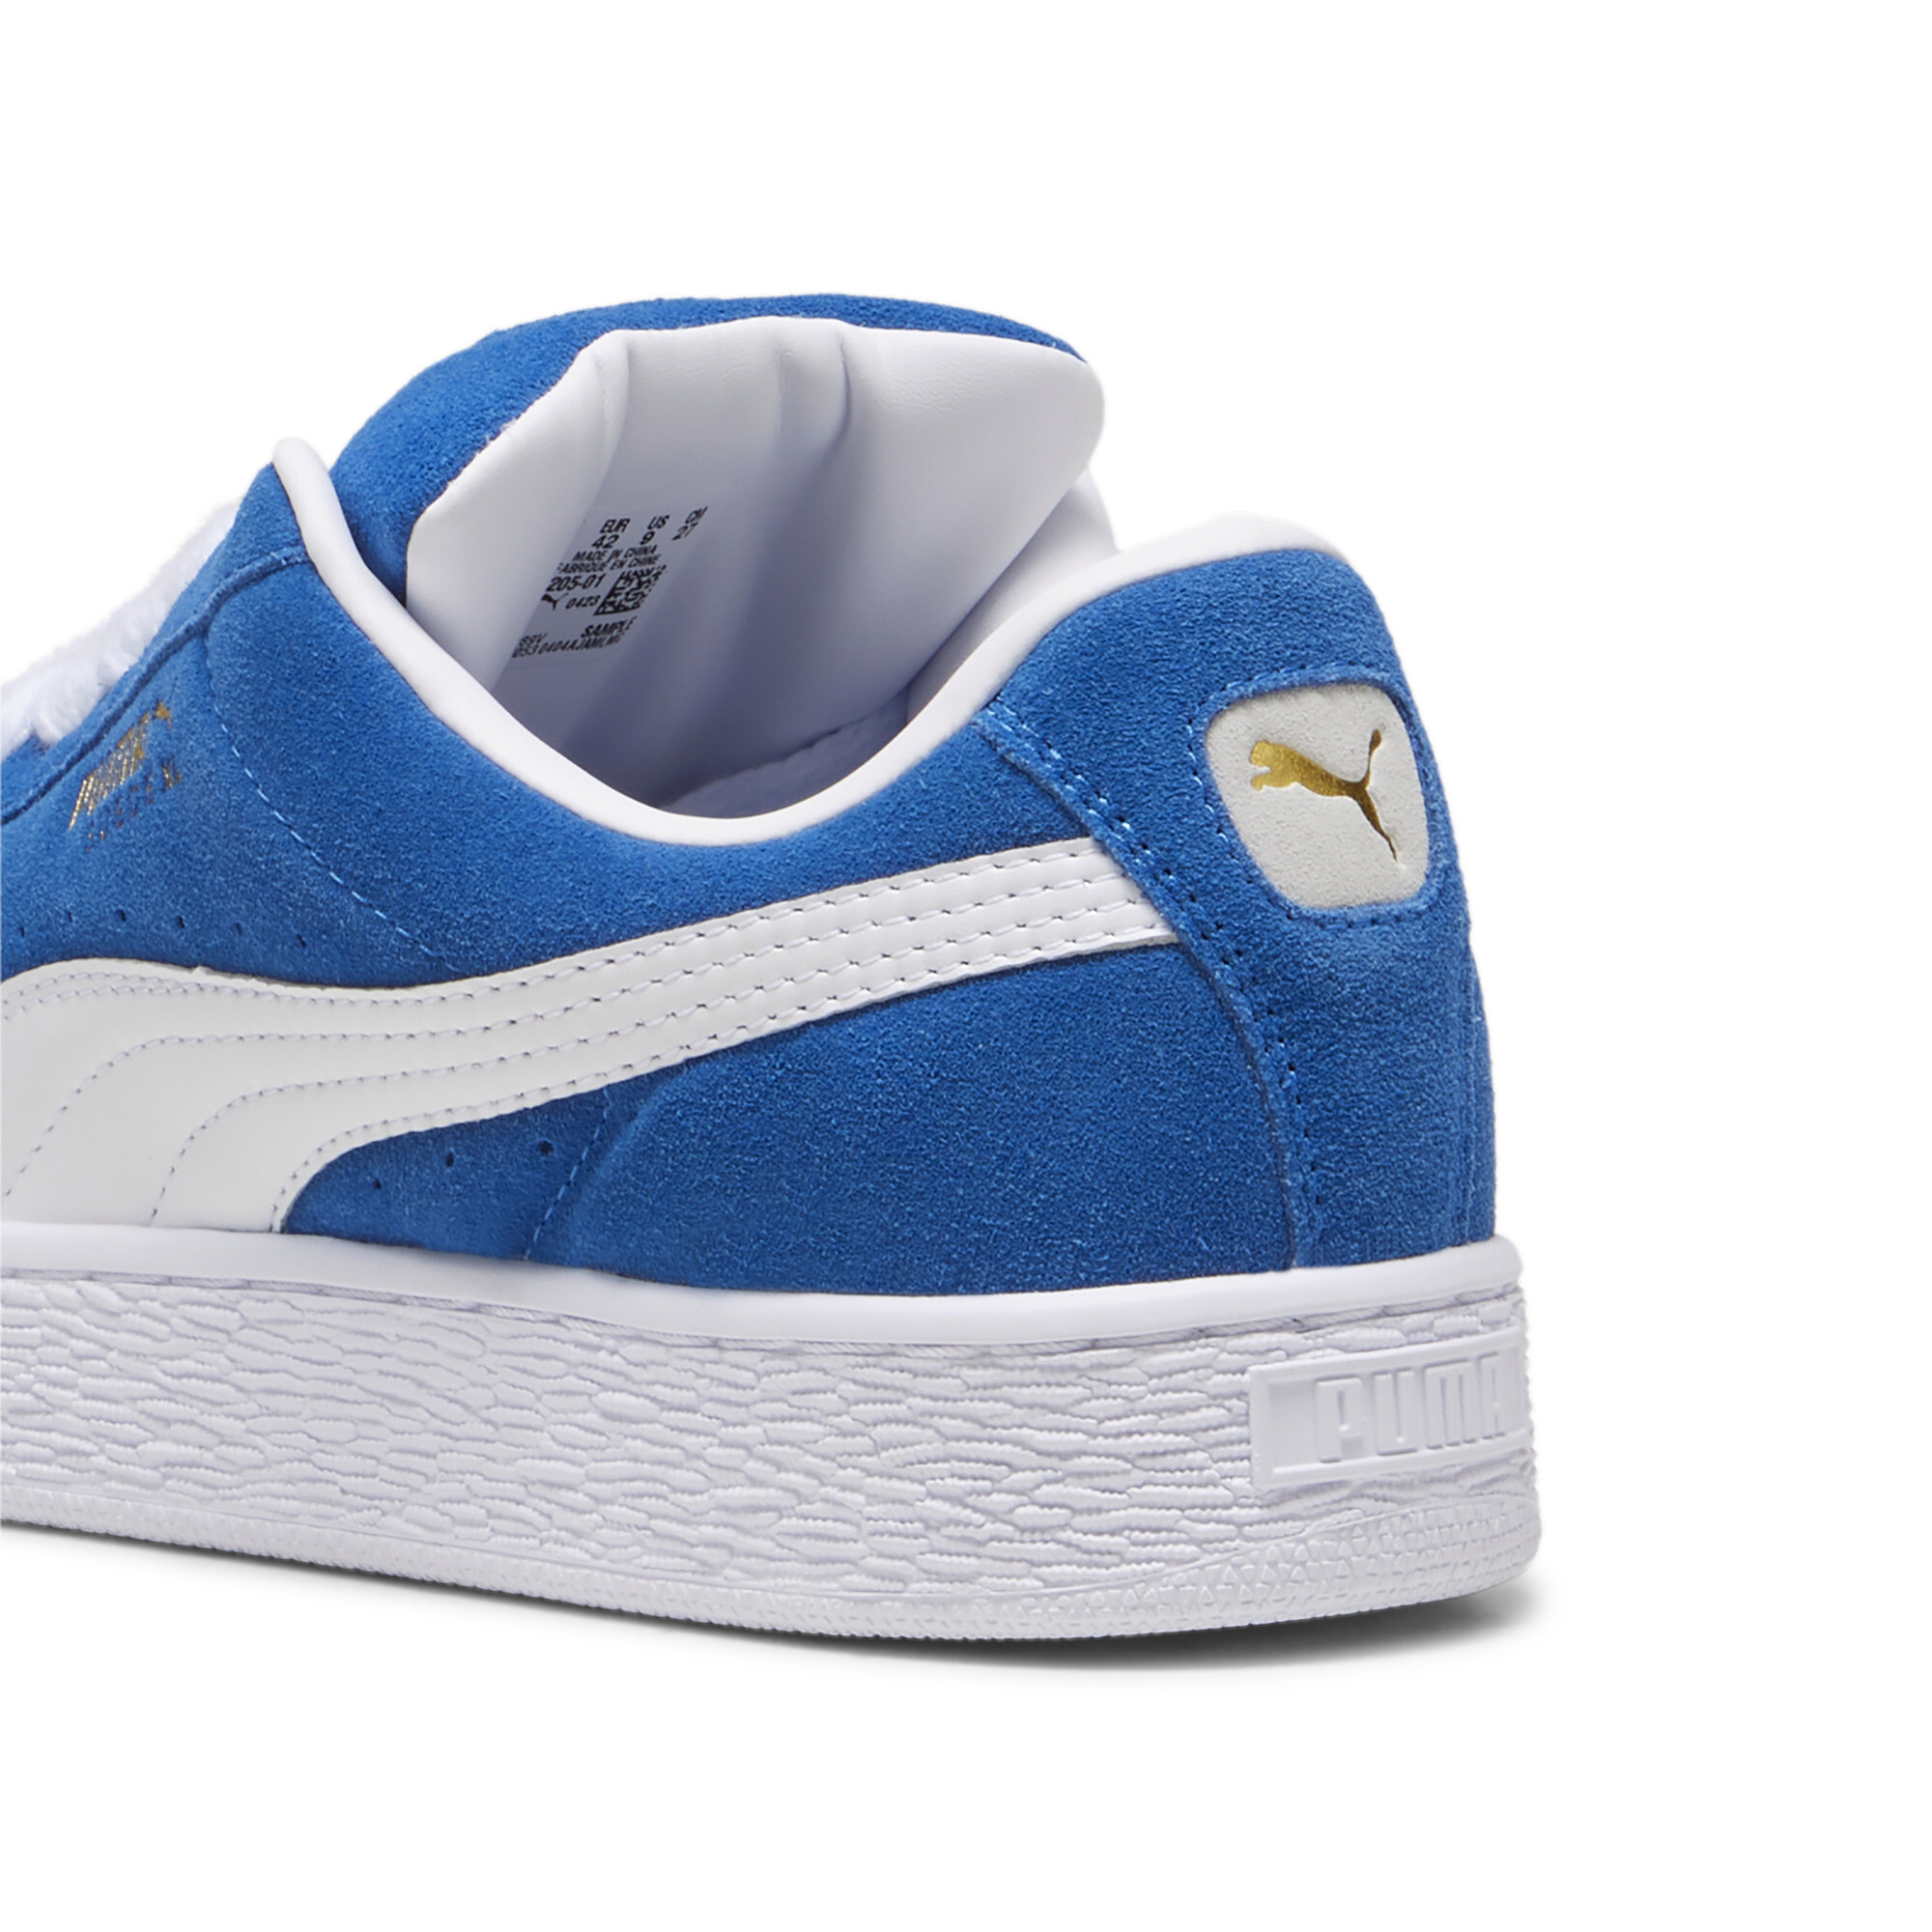 Unisex PUMA Suede XL Sneakers In Blue, Size EU 43